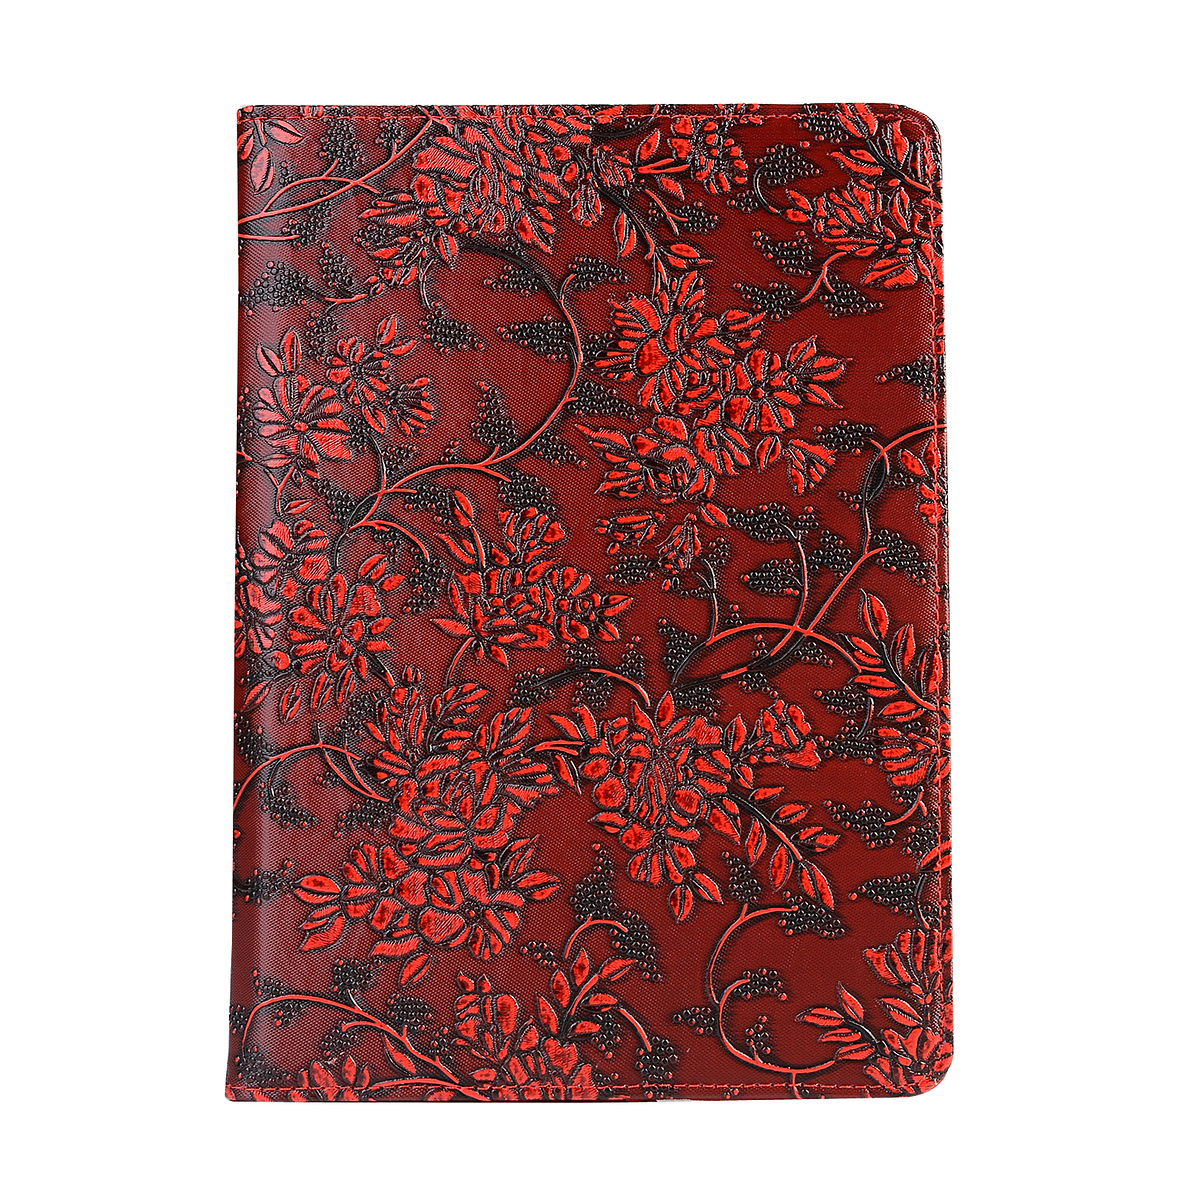 Läderfodral blommor röd, iPad 2/3/4